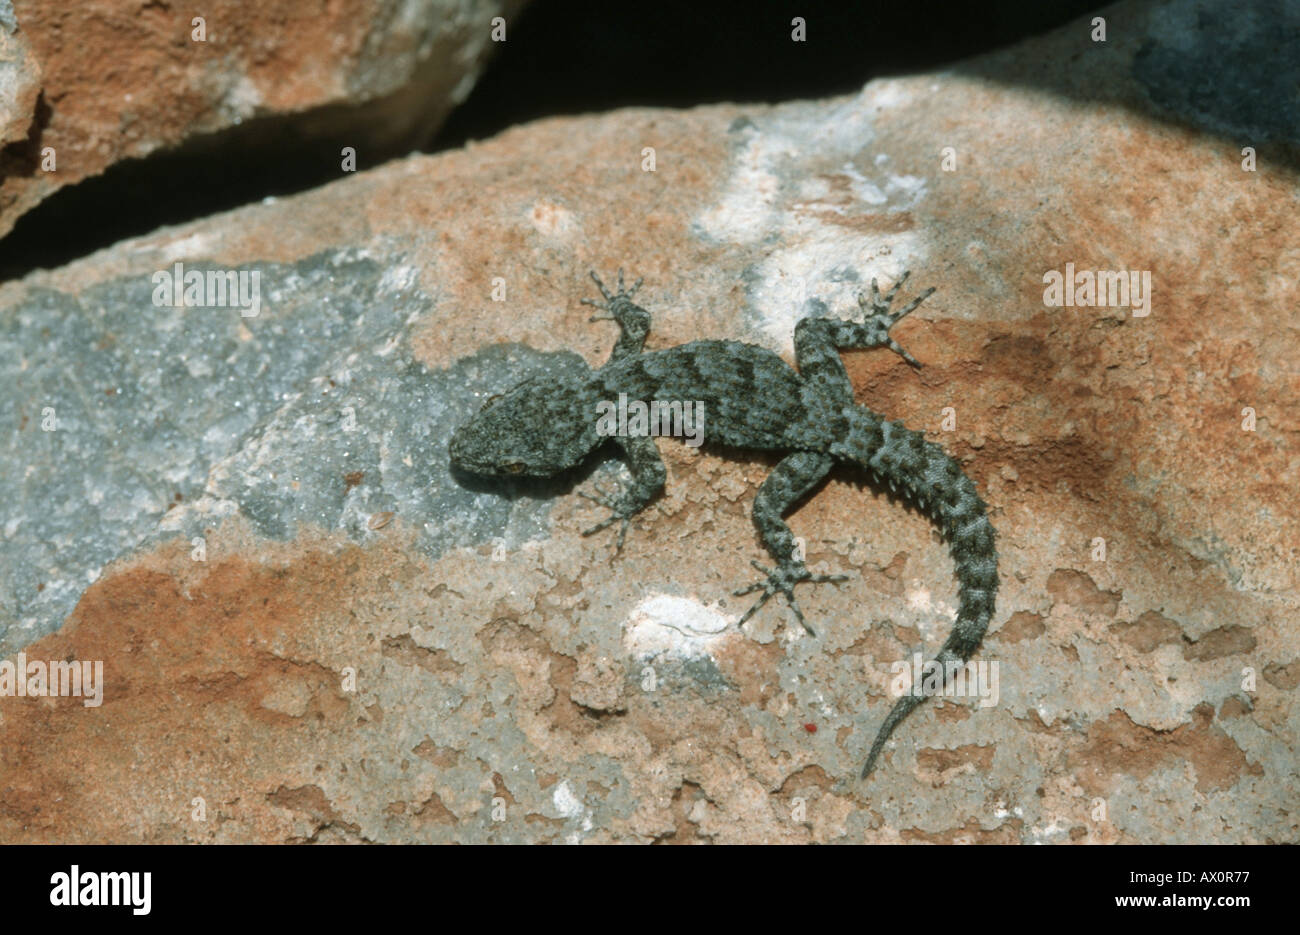 Kotschys gecko (Cyrtodactylus kotschyi), sitting on stone. Stock Photo